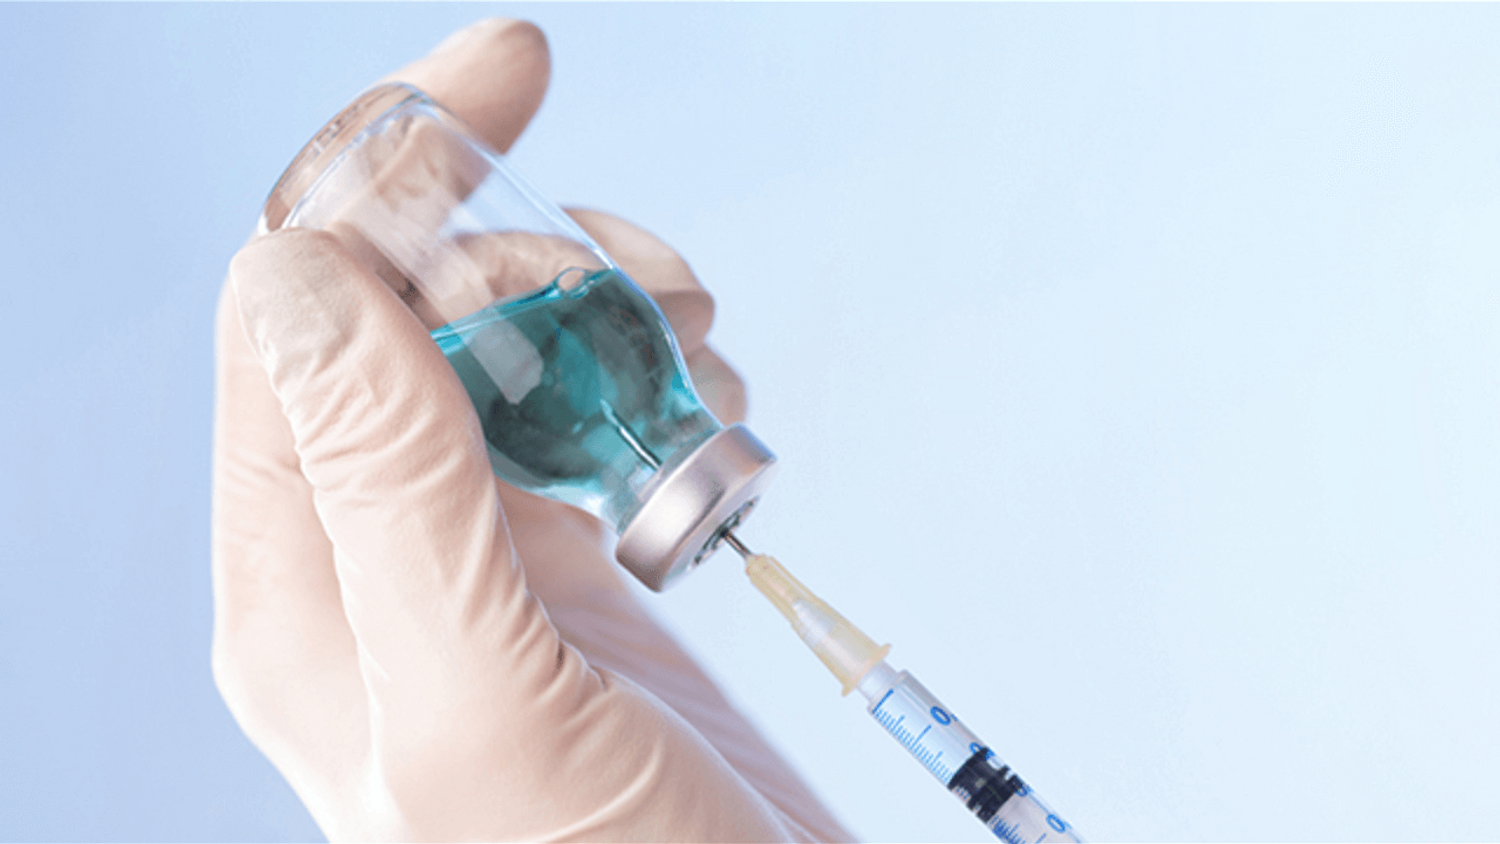 Vaccin anti-Covid : Valneva démarre son essai clinique de phase 3 comme dose de rappel